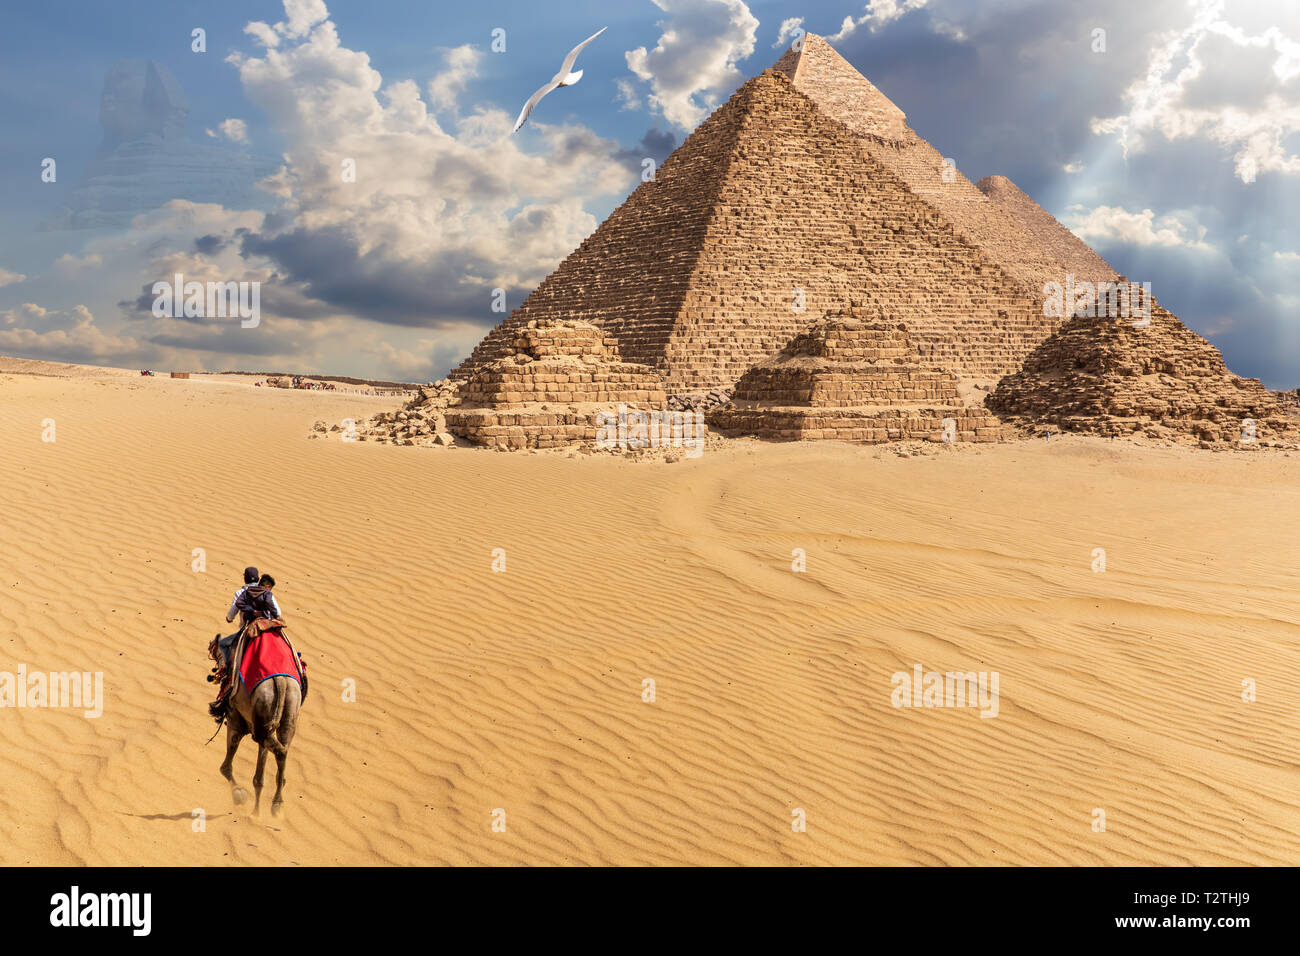 Pirámides de Egipto en el desierto de Giza, en vista de la fantasía. Foto de stock